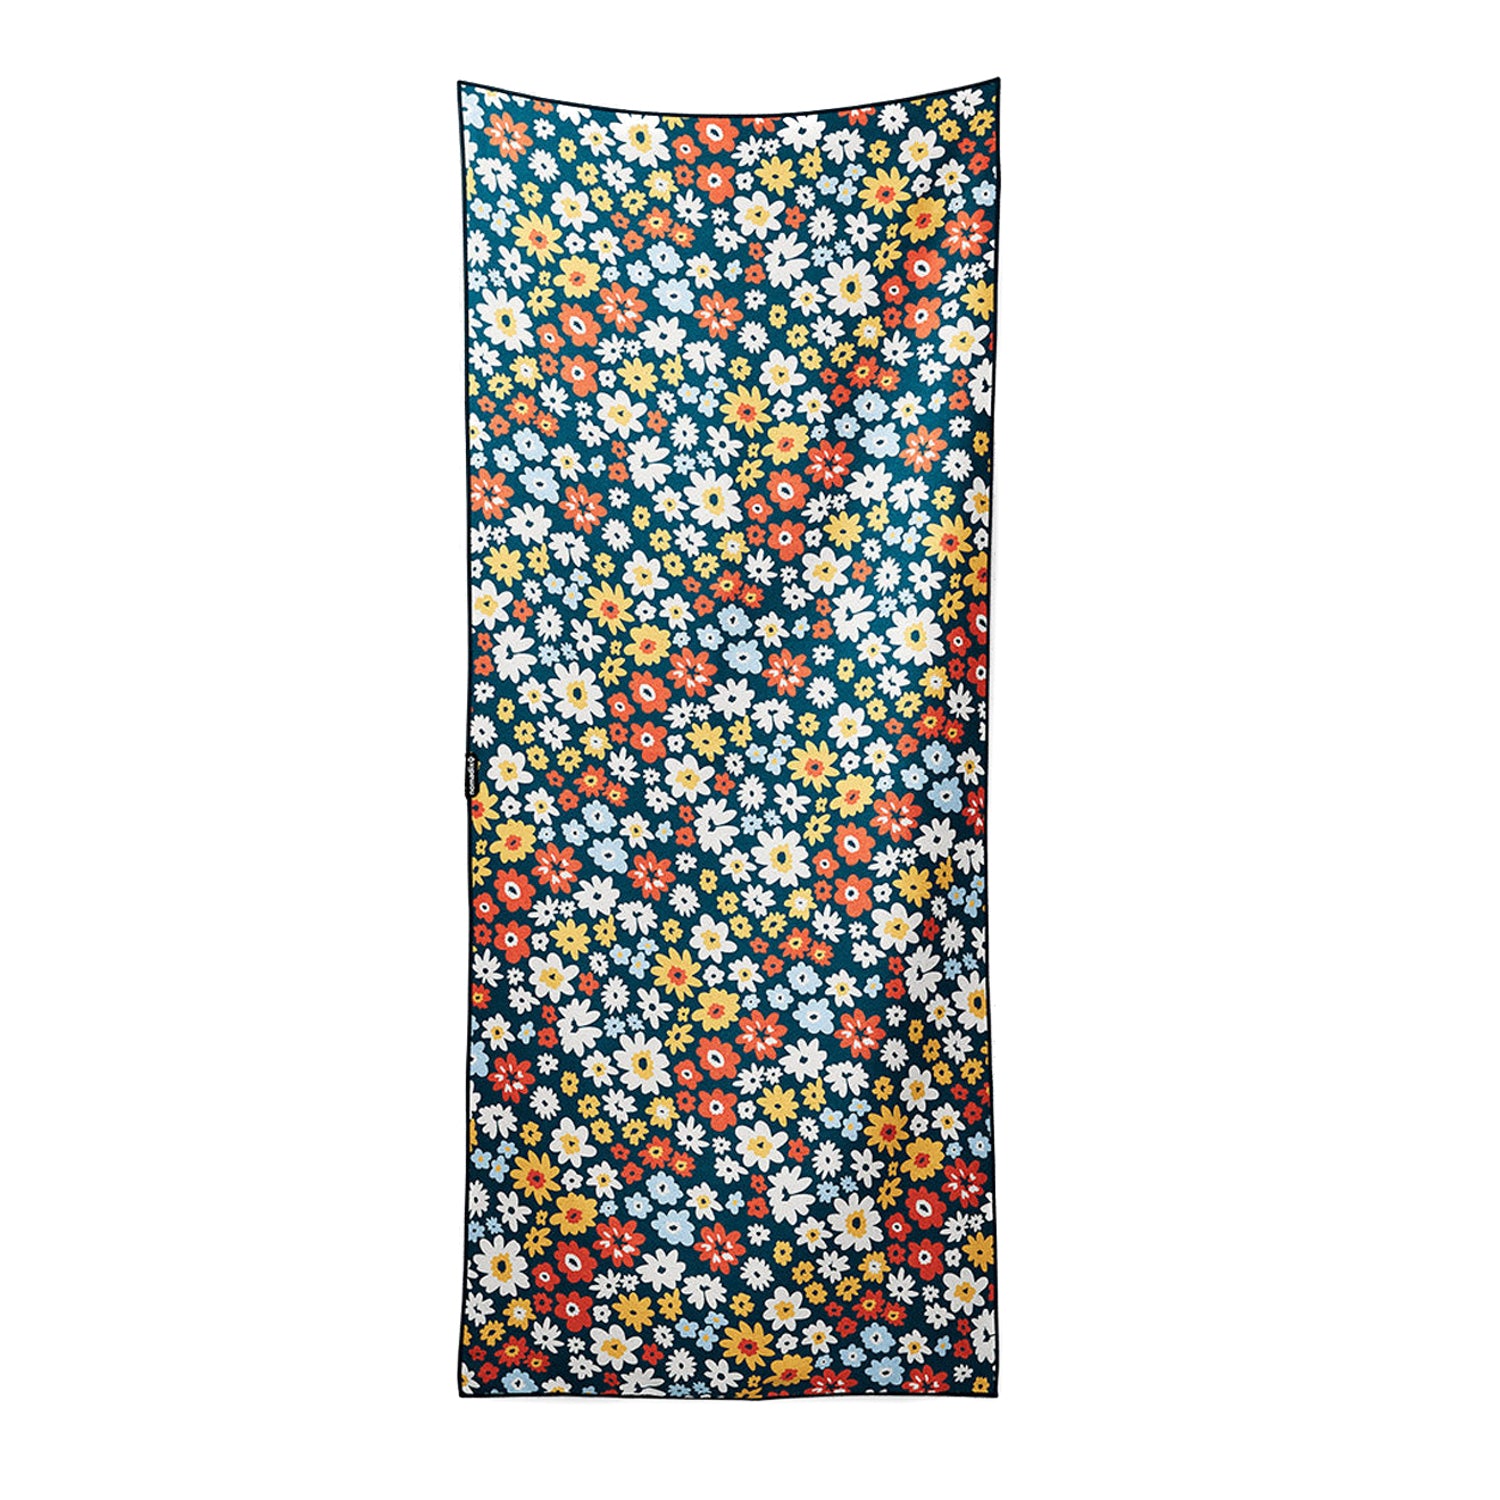 Spring Flowers - Orig.Towel